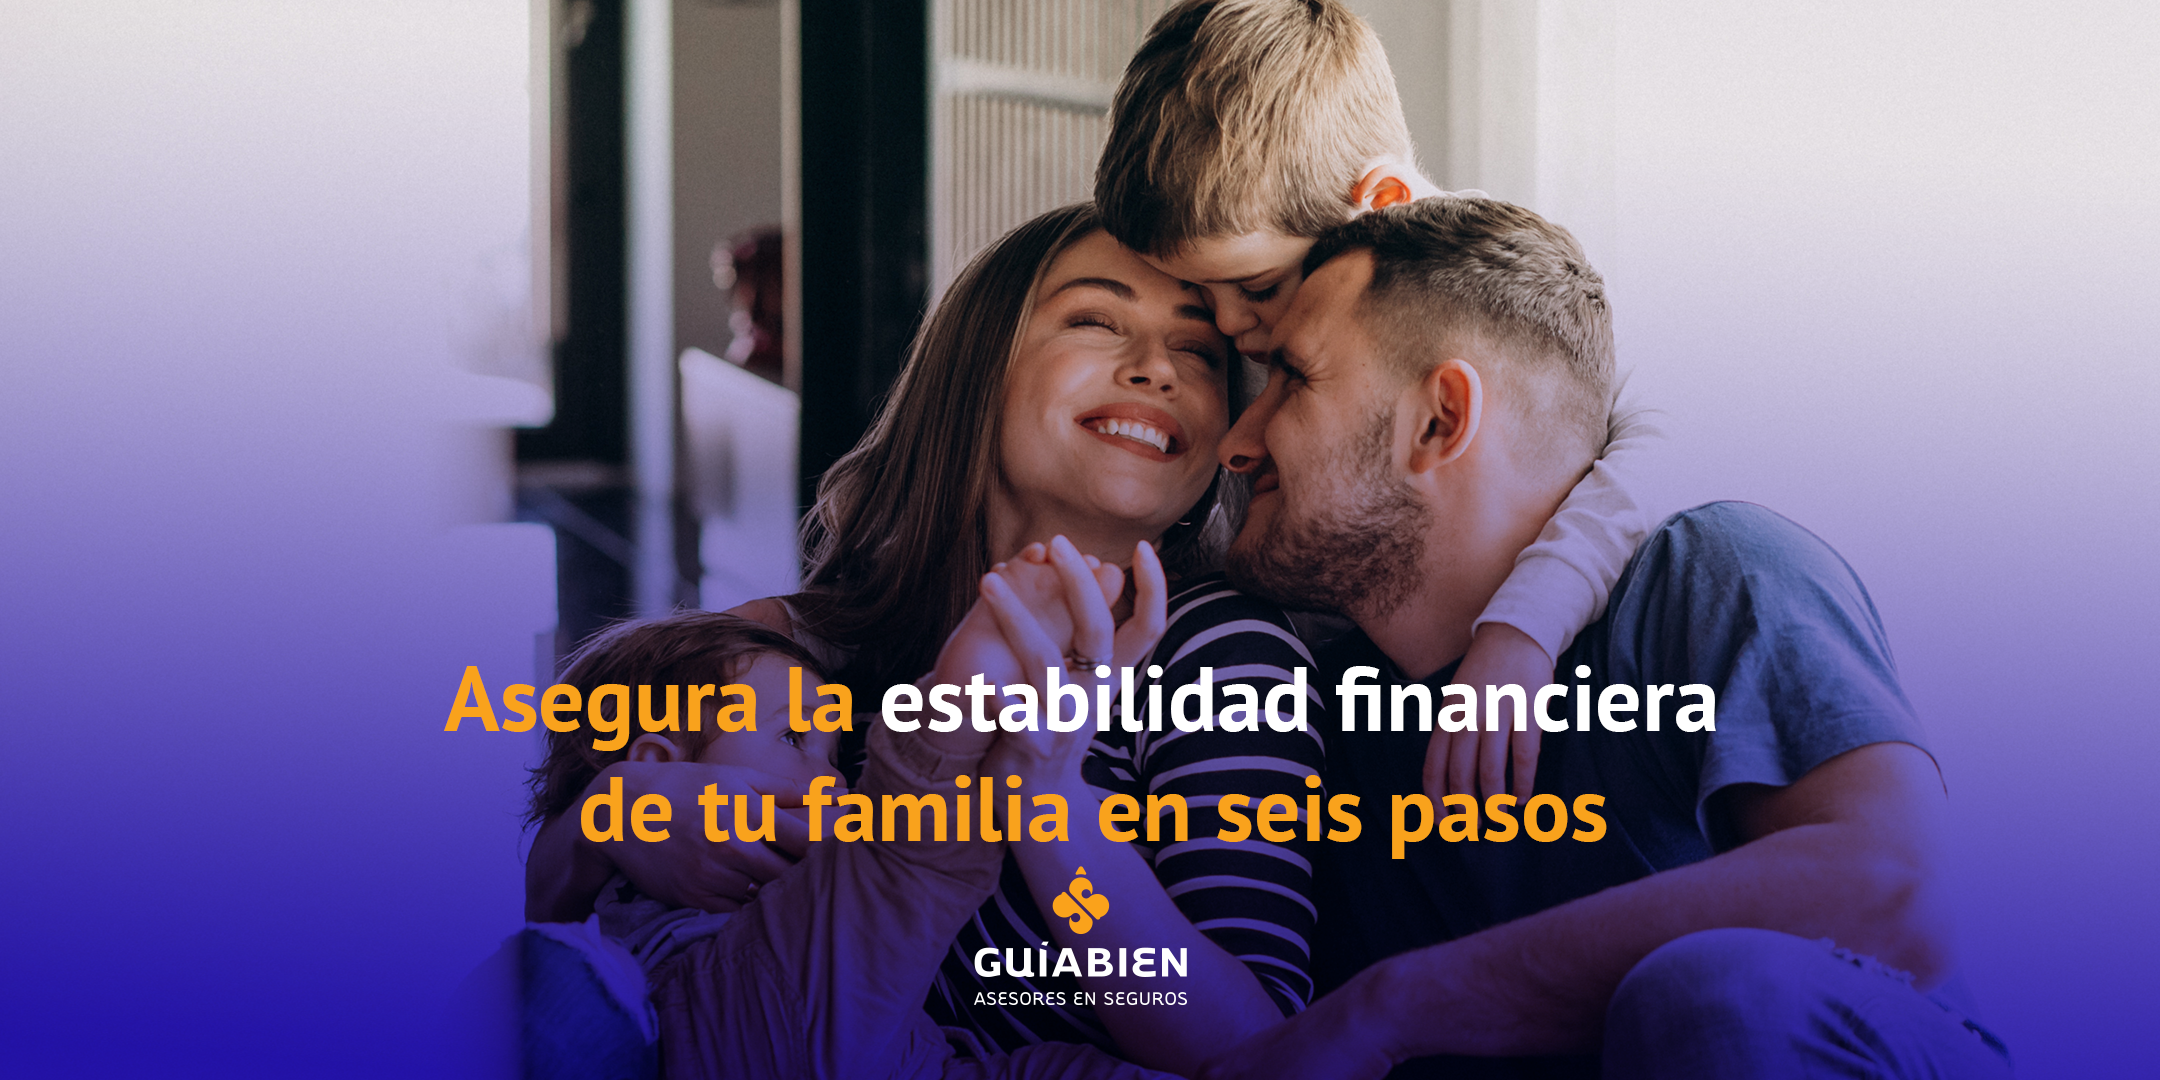 Asegura la estabilidad financiera de tu familia en 6 pasos